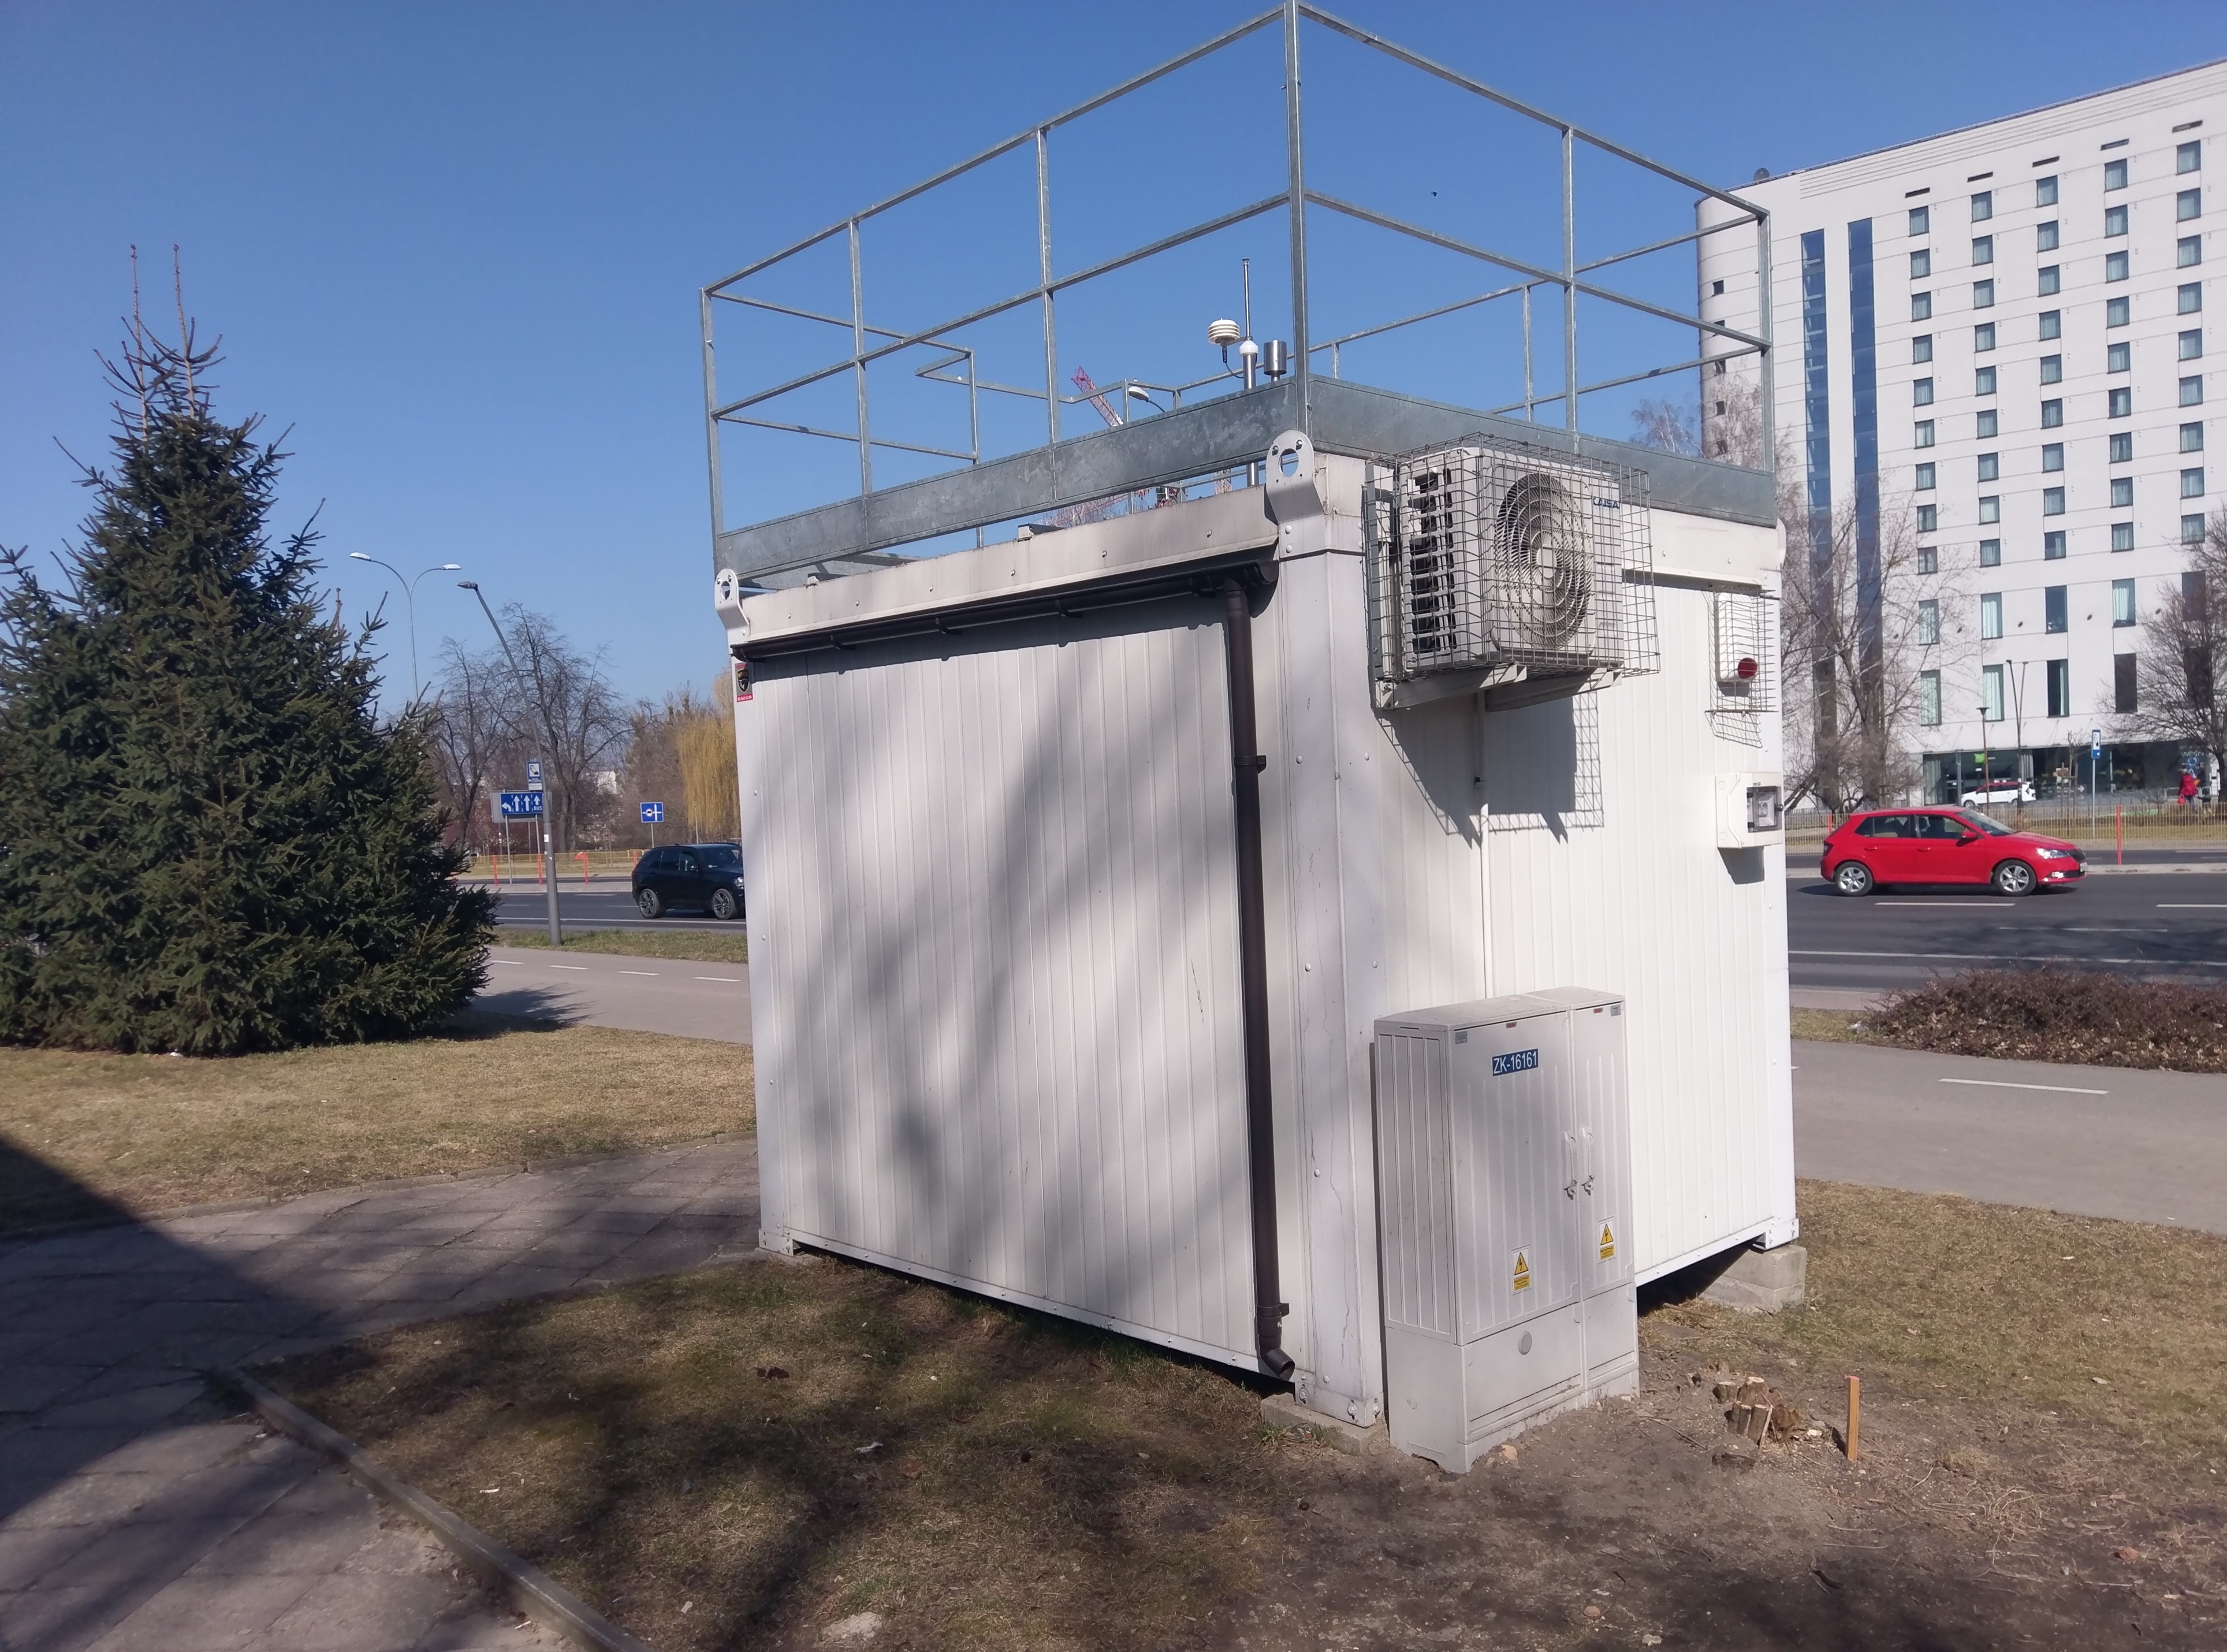 Stacja monitoringu jakości powietrza w Białymstoku na tle ulicy i okolicznych budynków